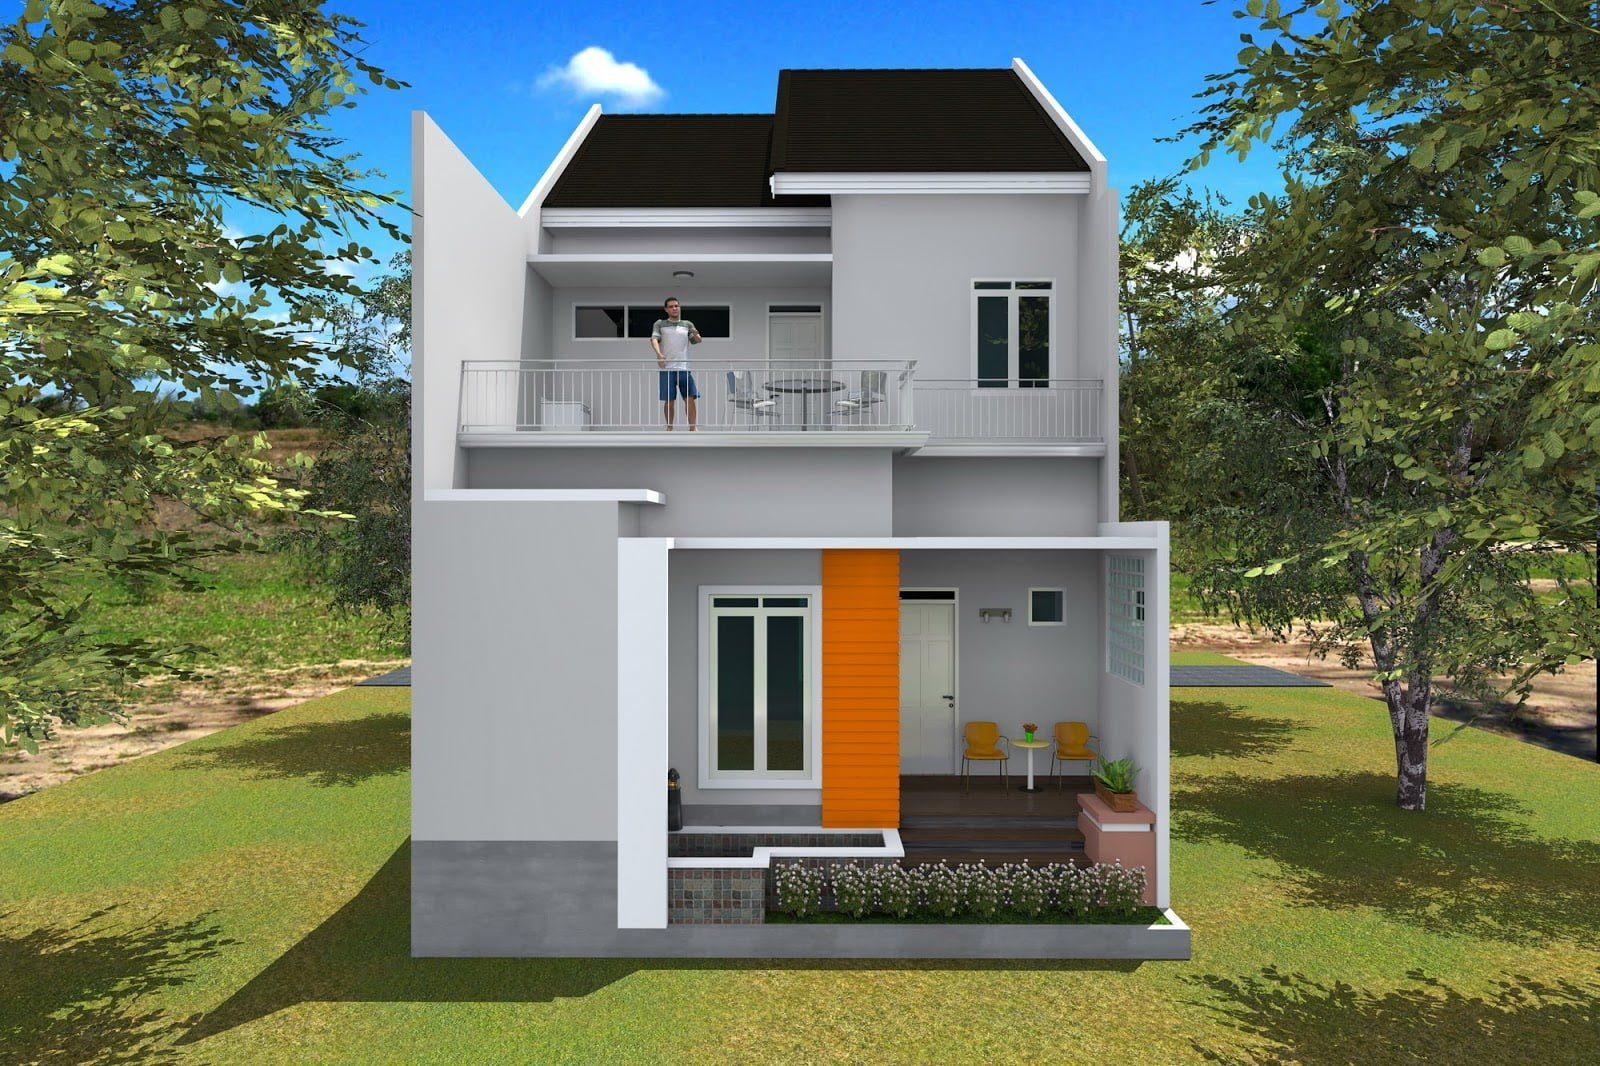 51 Gambar Desain Rumah Minimalis 2 Lantai Sederhana Di Kampung Tren Terbaru